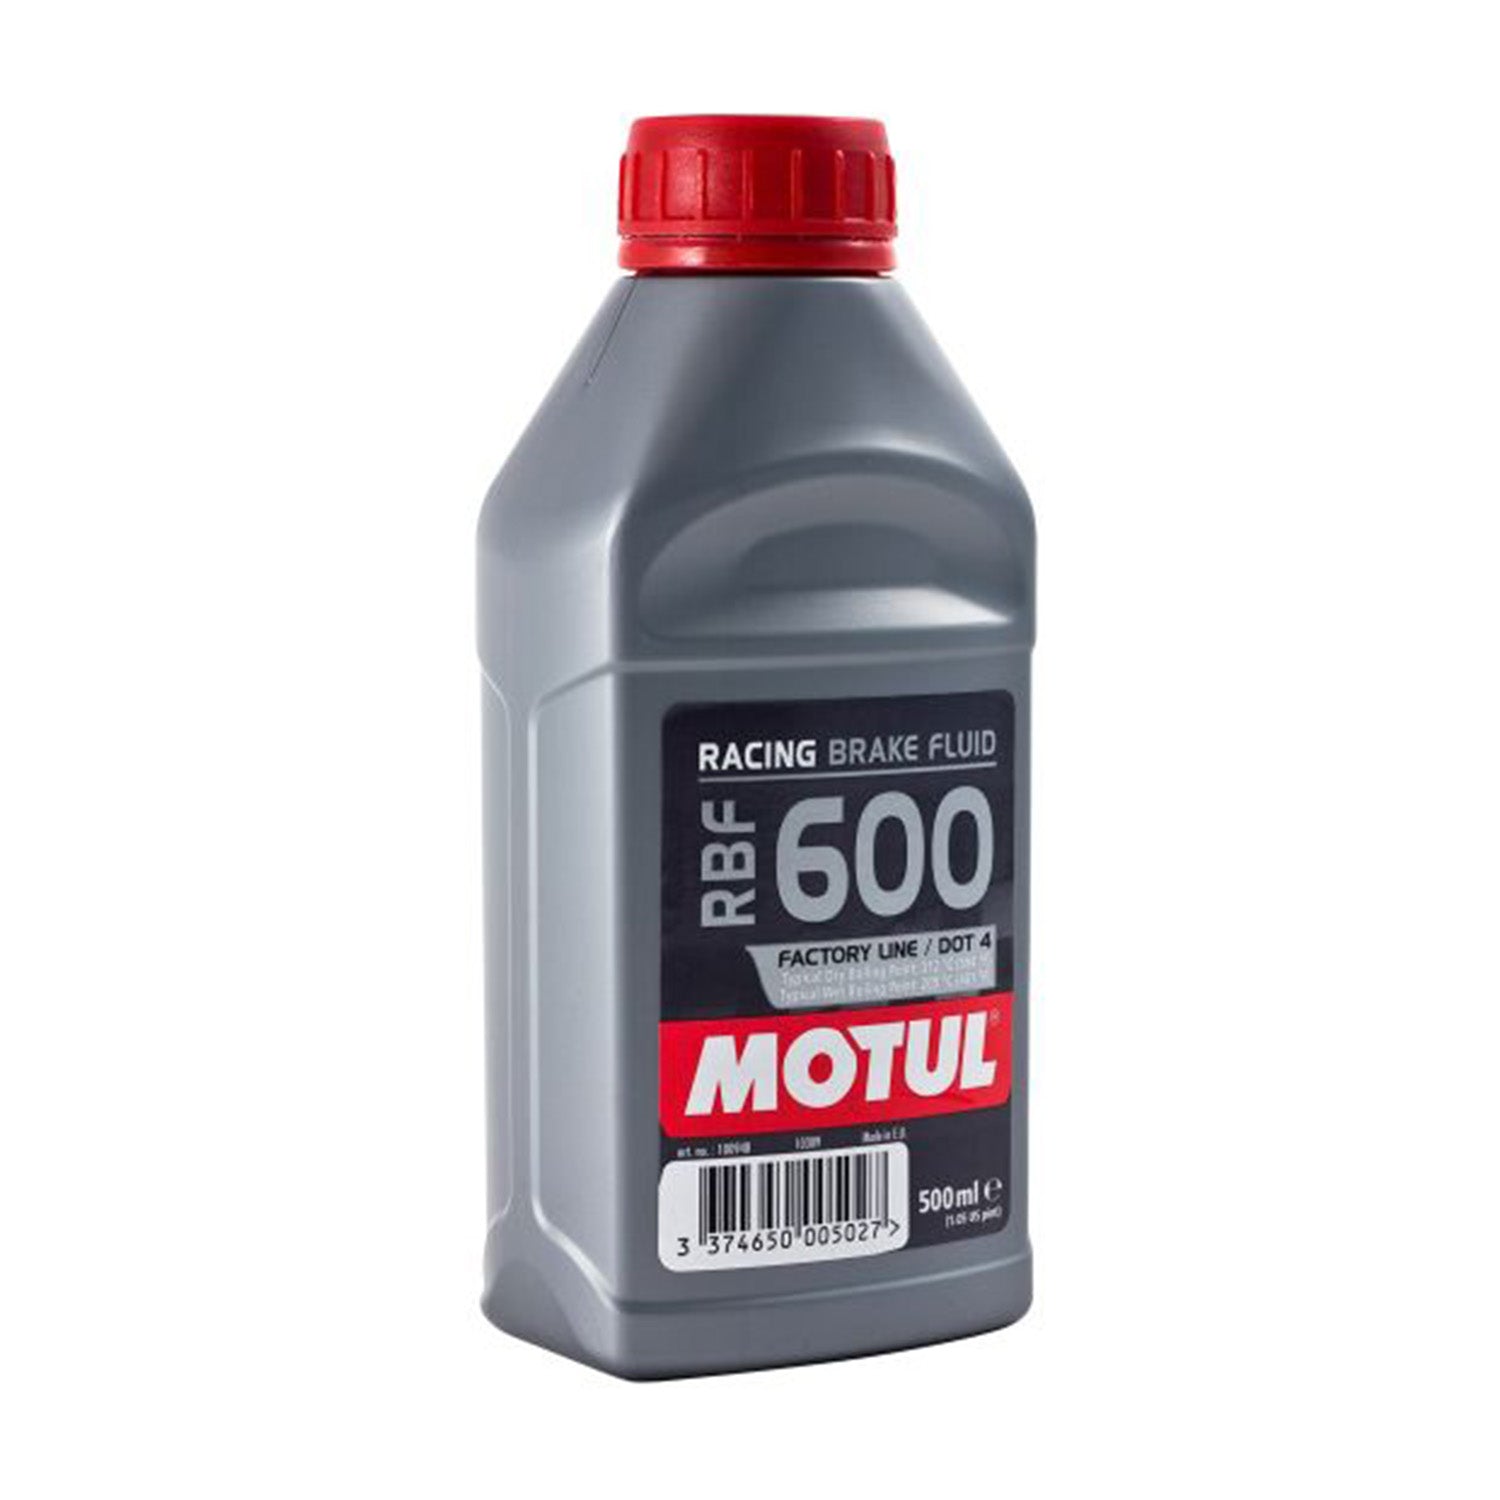 MOTUL 500ml RBF 600 Factory Line Dot 4 Brake Oil Fluid